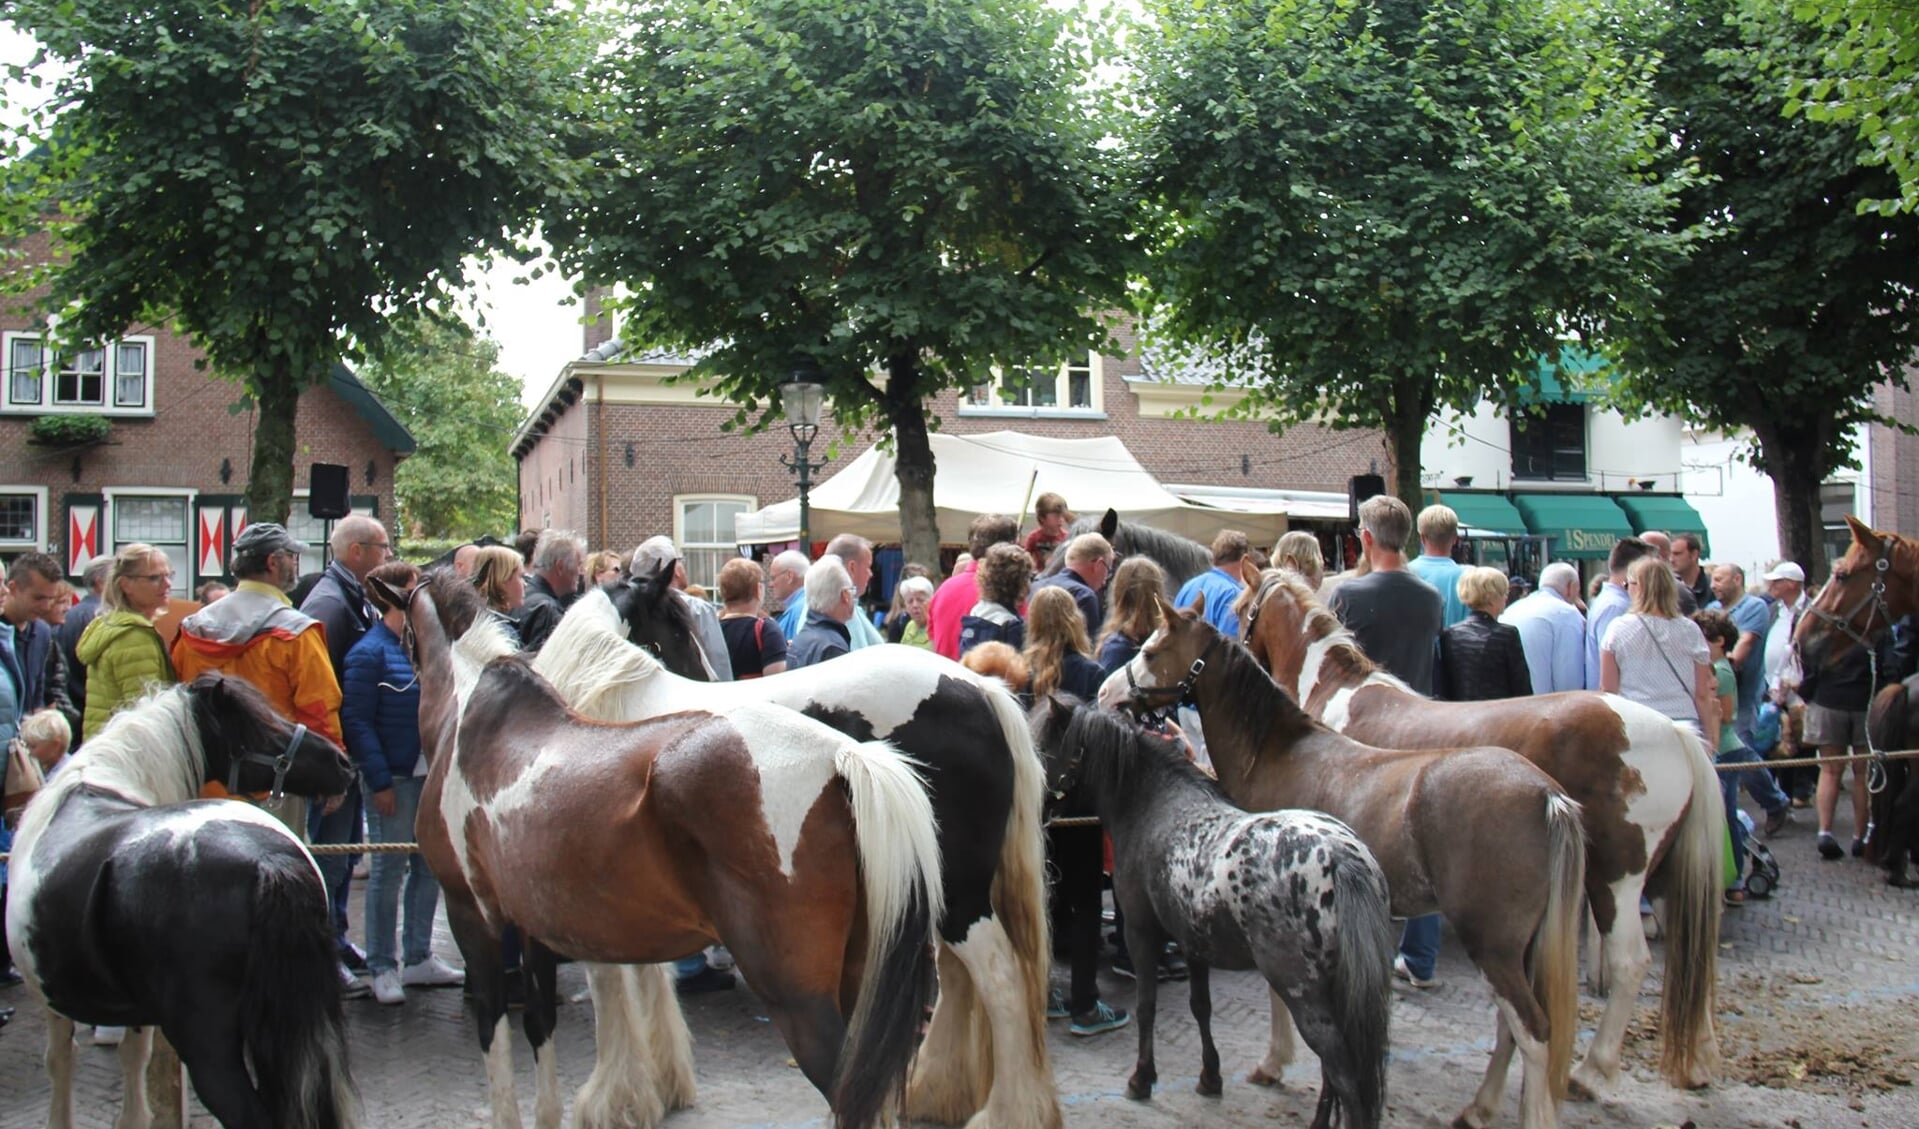 Het wordt bloedheet op Paardenmarkt 2018. Het bestuur beraadt zich op maatregelen. Foto: facebook Paardendagen